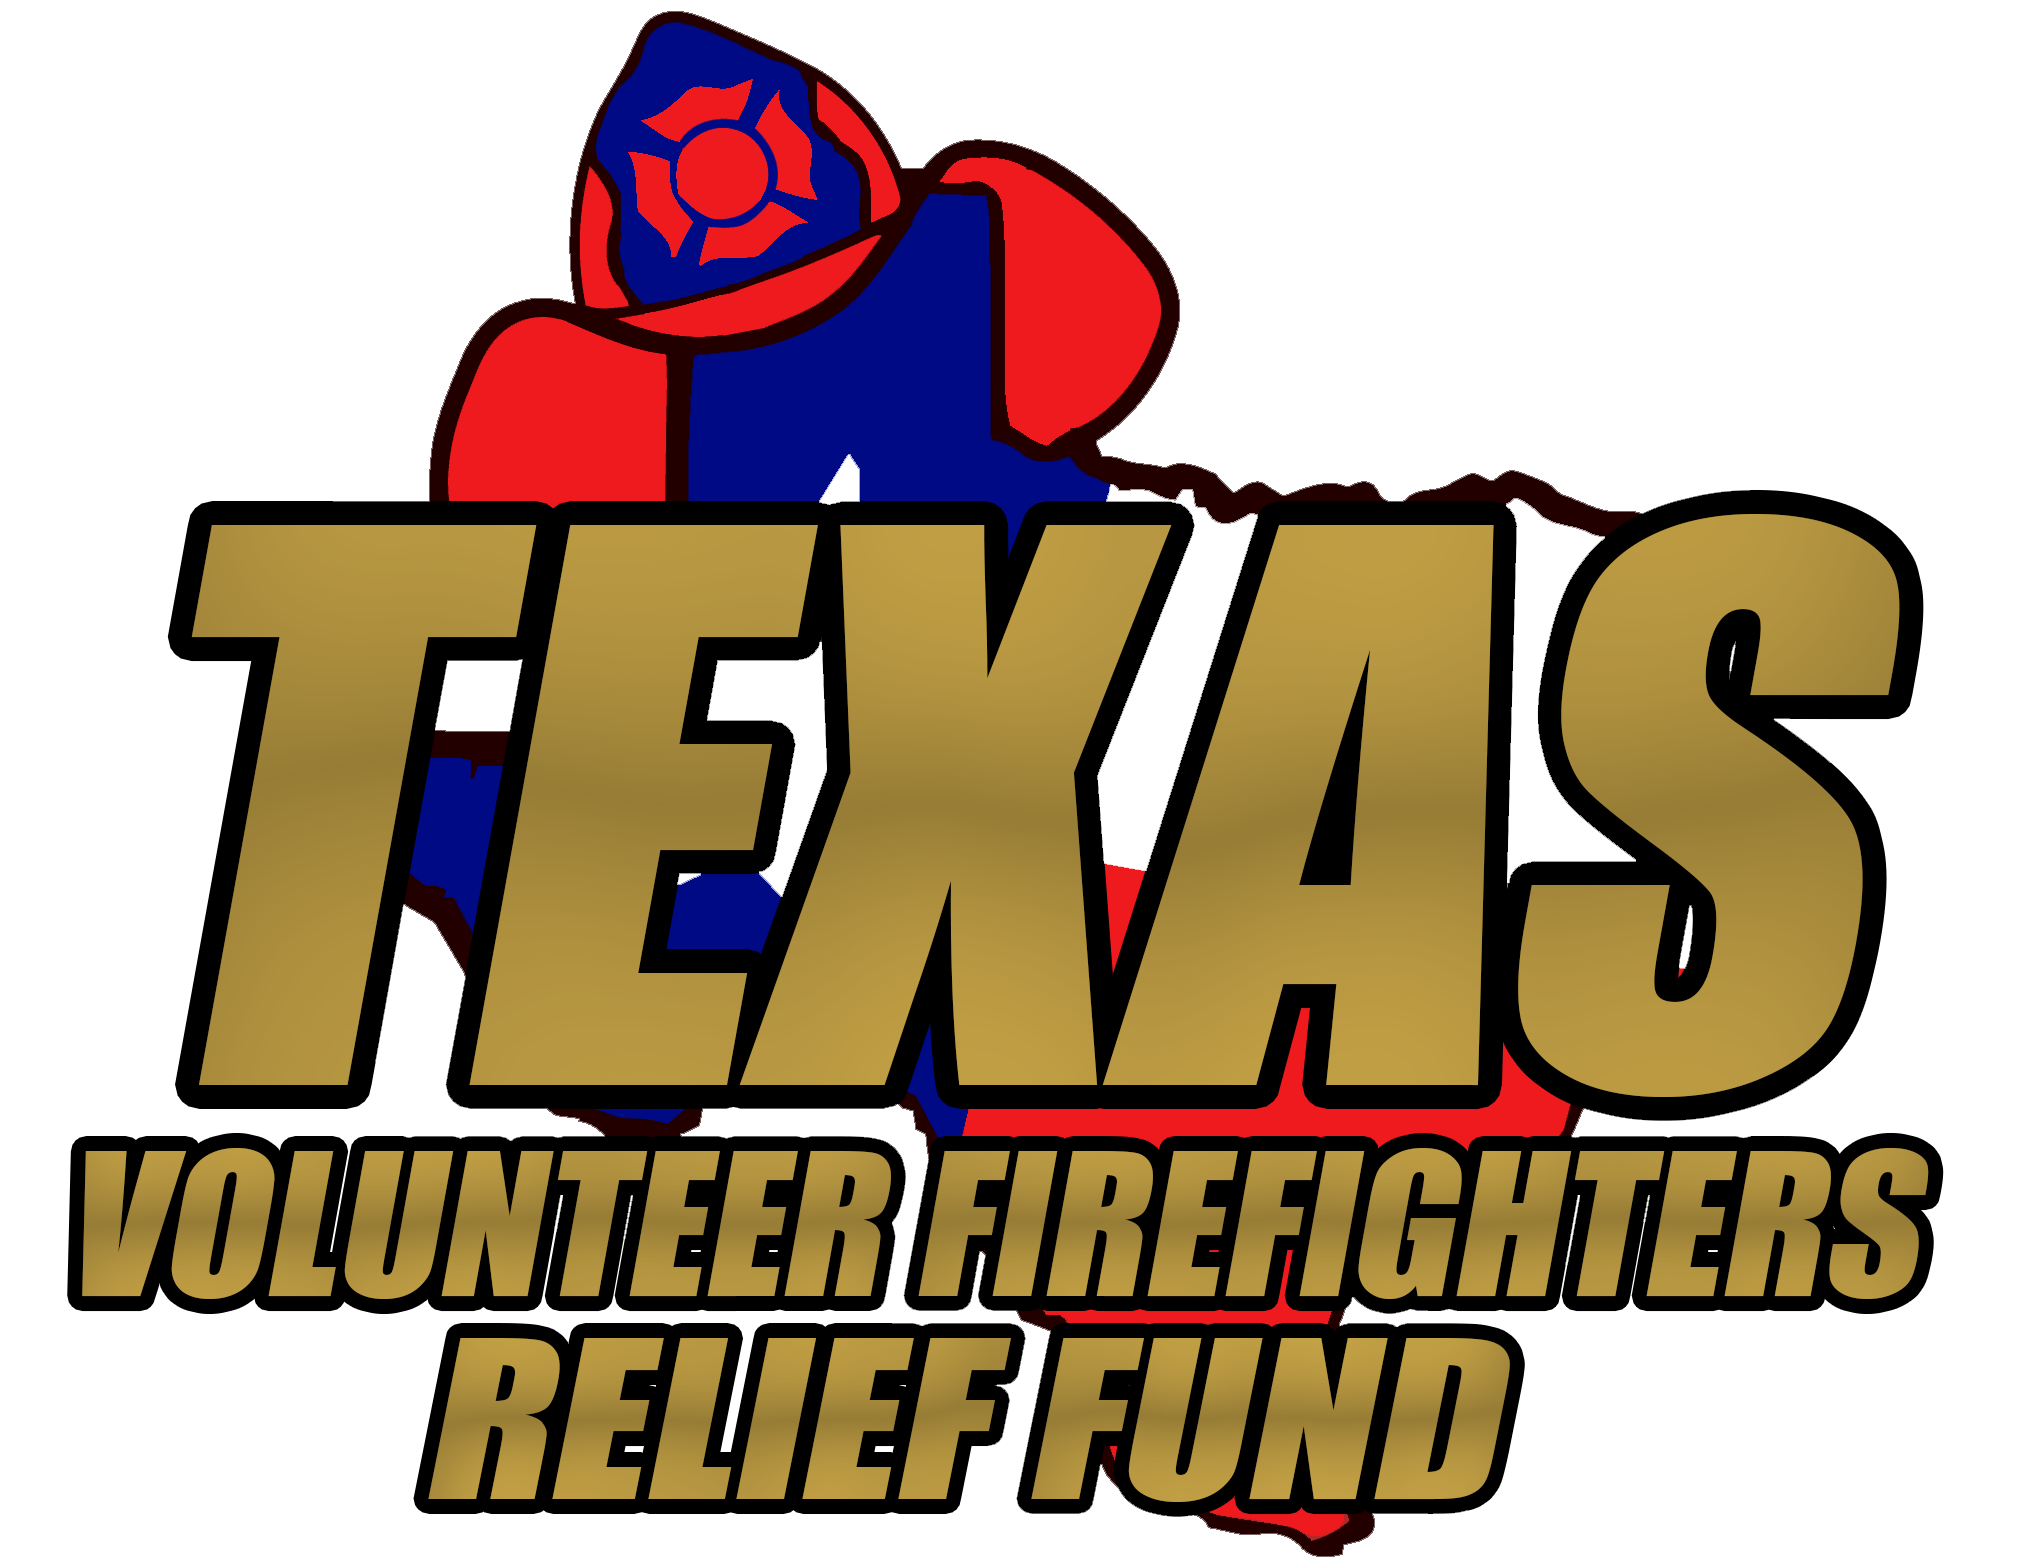 Texas Volunteer Firefighters Relief Fund